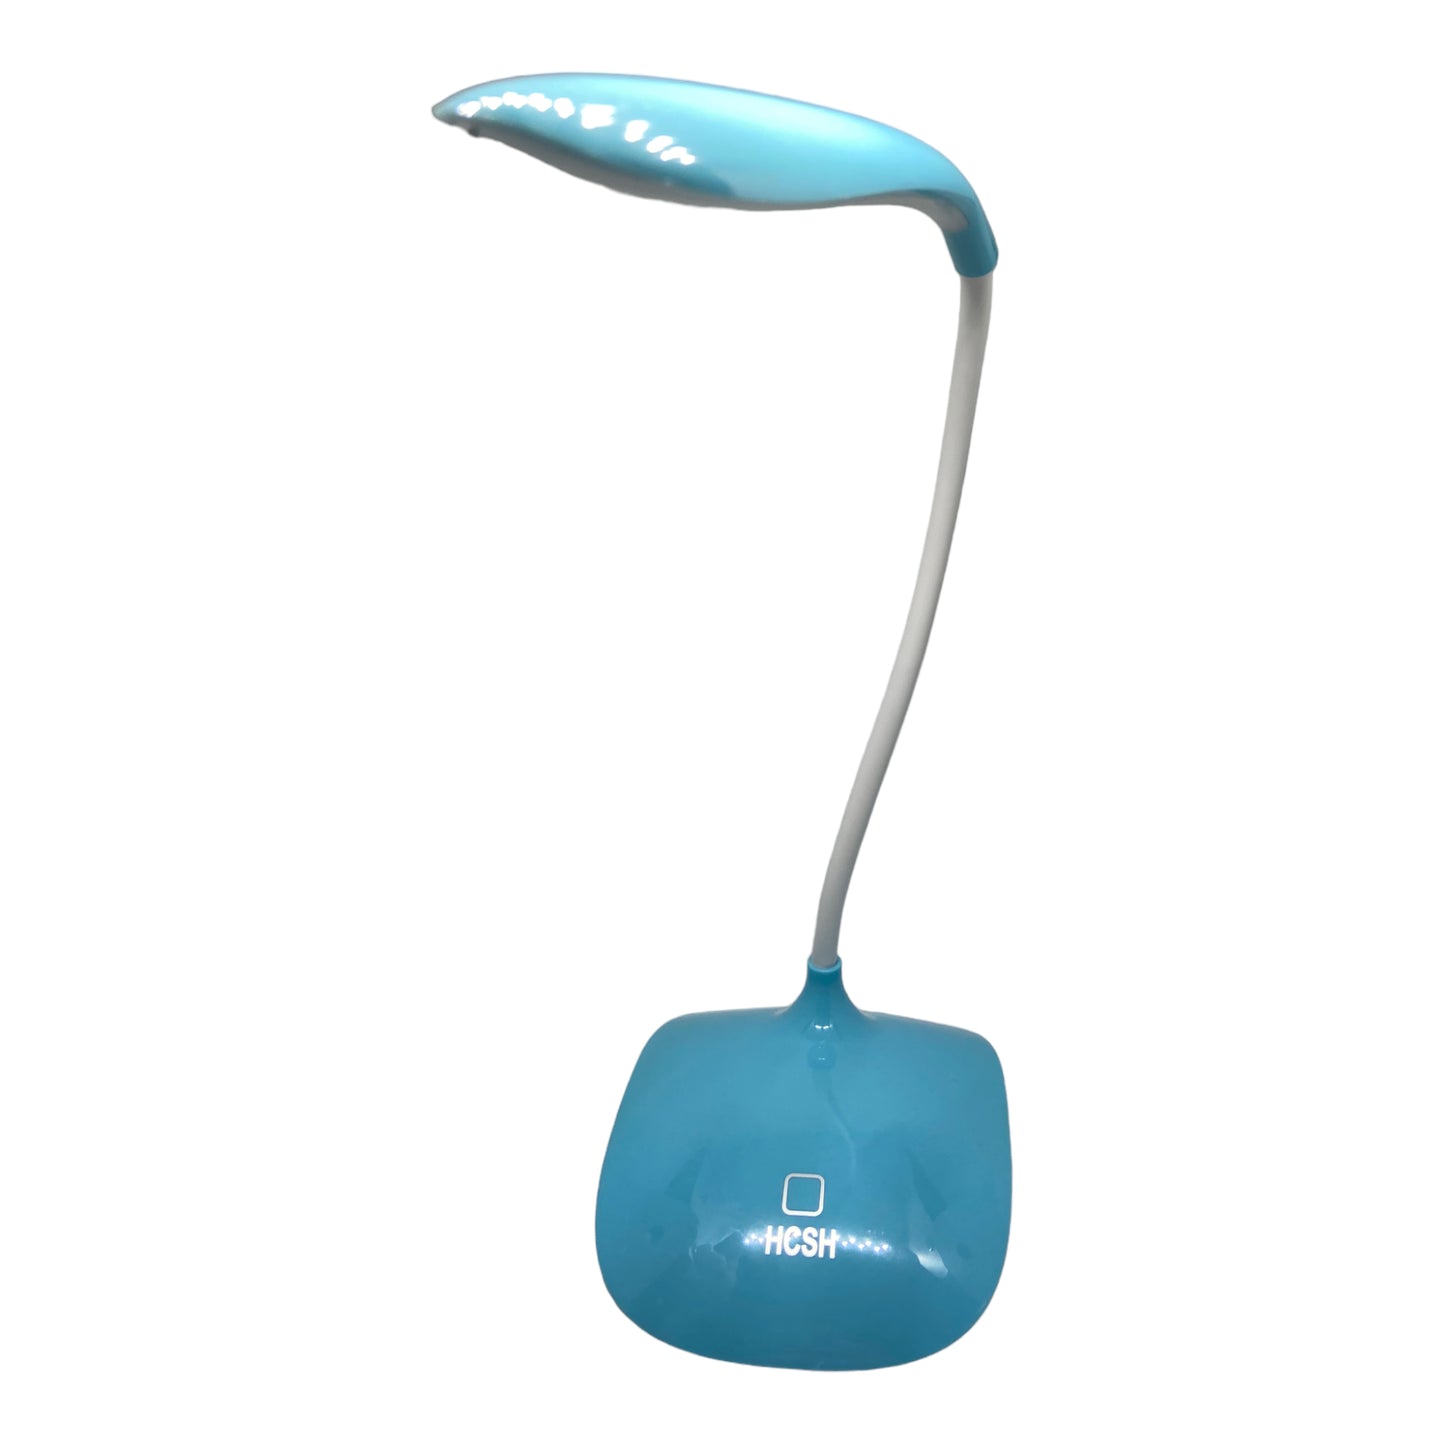 Flexible Table lamp-انارة للمكتب او للقراءة ء متوفر ب ٣ ألوان